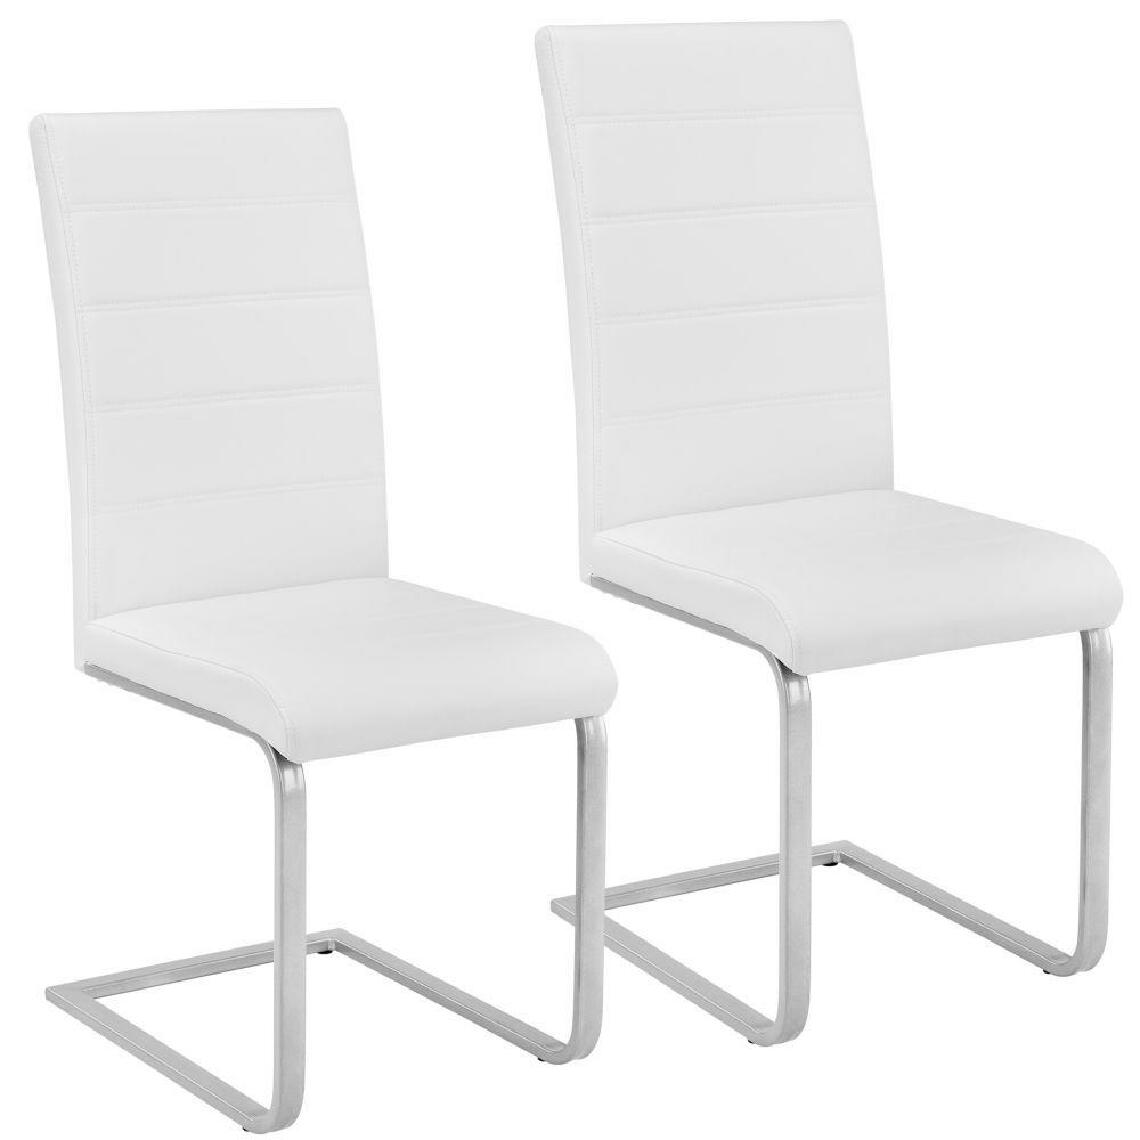 Helloshop26 - Lot de 2 chaises de salle à manger salon cuisine design blanc 1908013 - Chaises